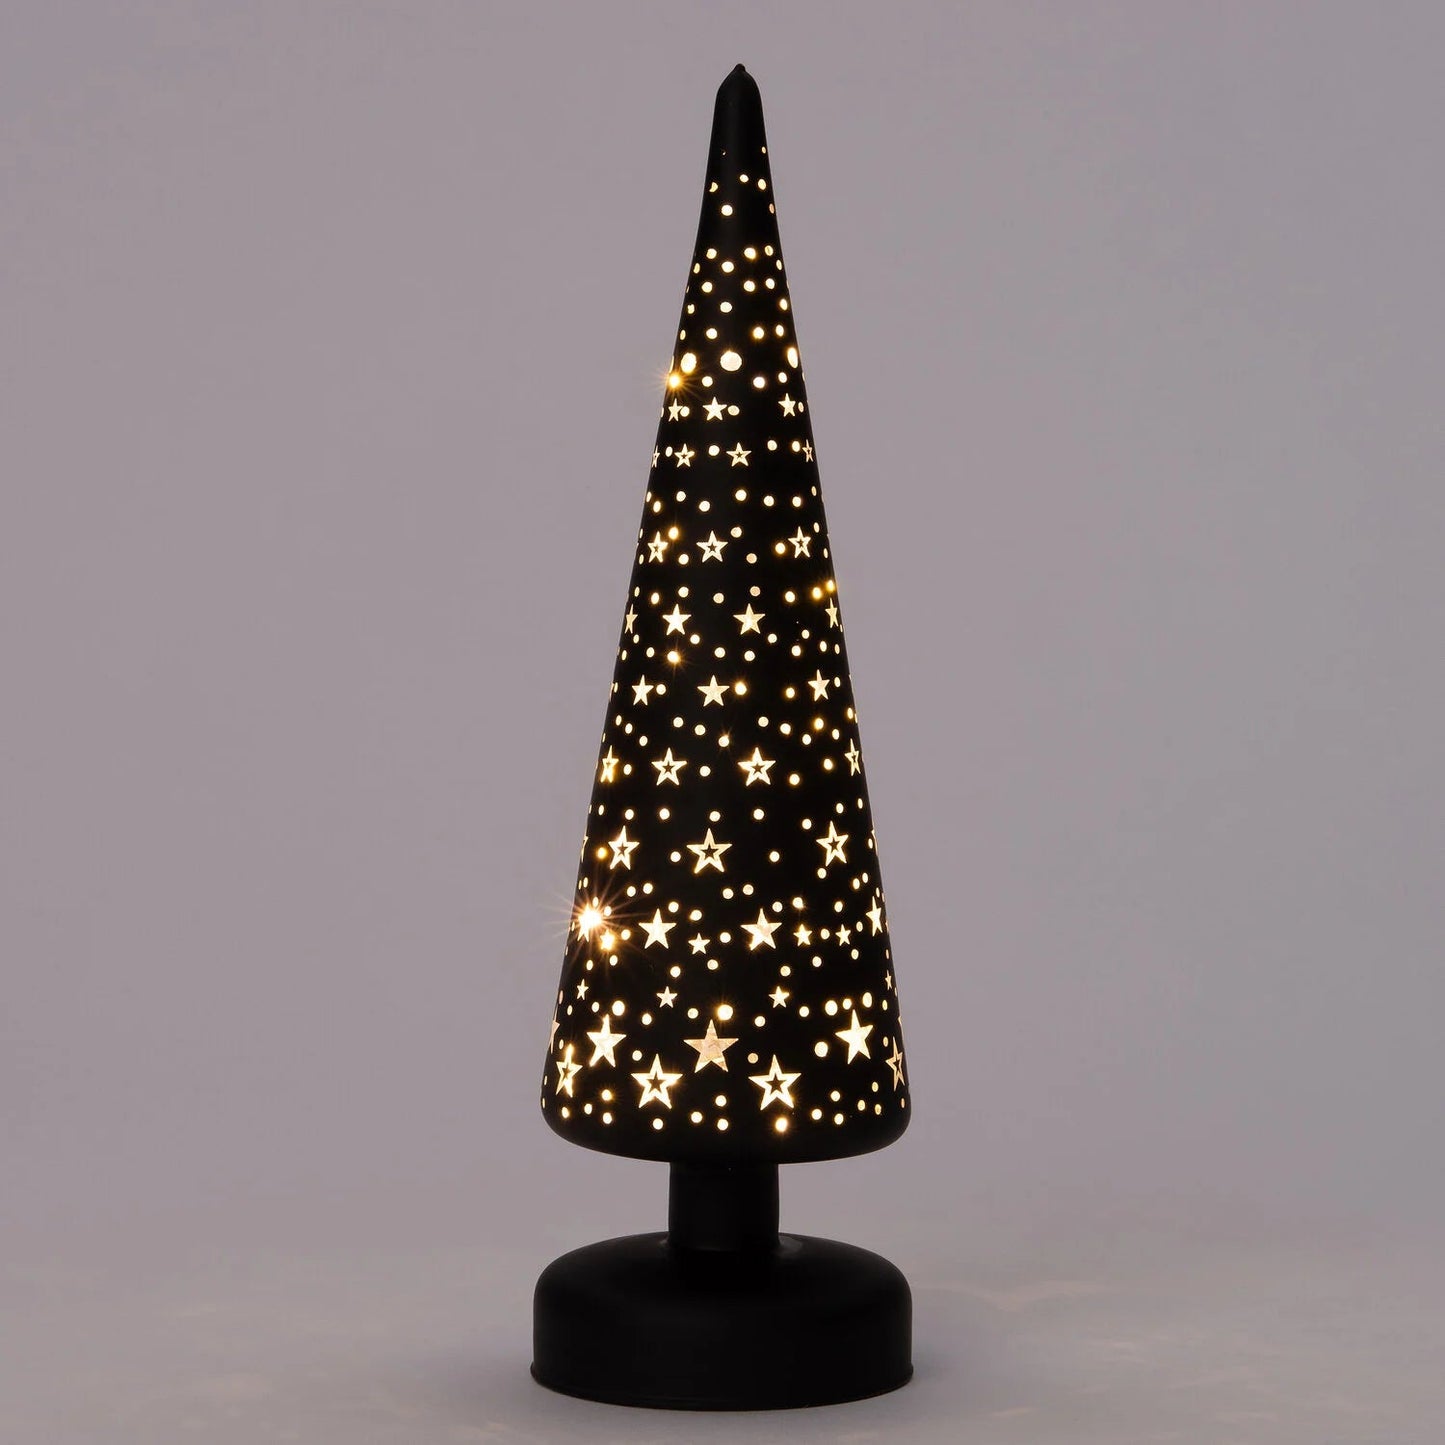 Kerstboom met verlichting Woonunique